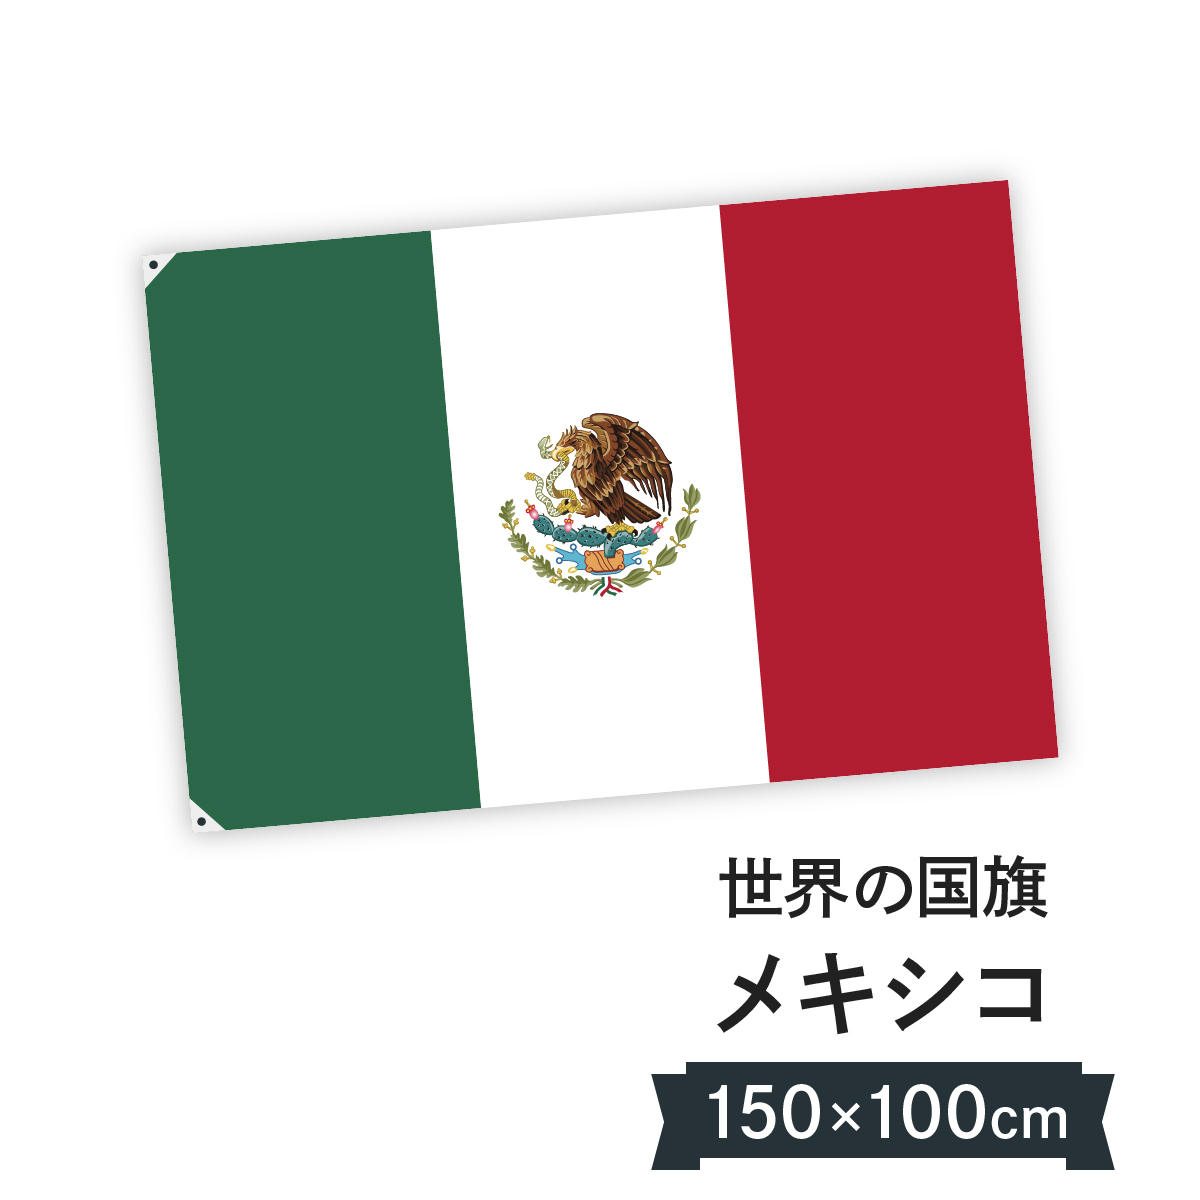 お店に飾ればお手軽異国風演出 メキシコ合衆国 美品 国旗 W150cm H100cm 爆安プライス